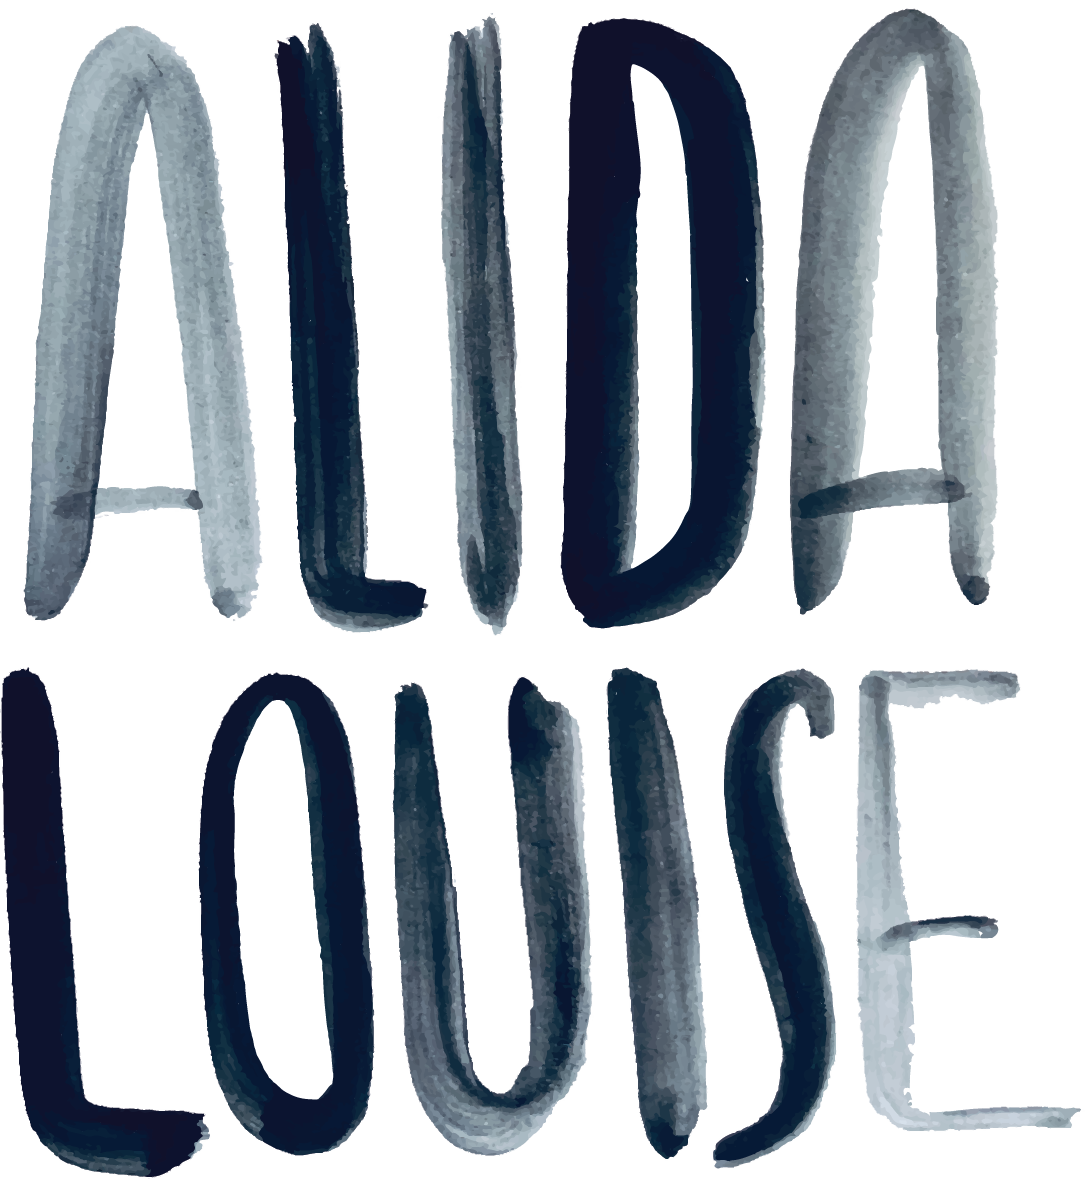 ALIDA LOUISE